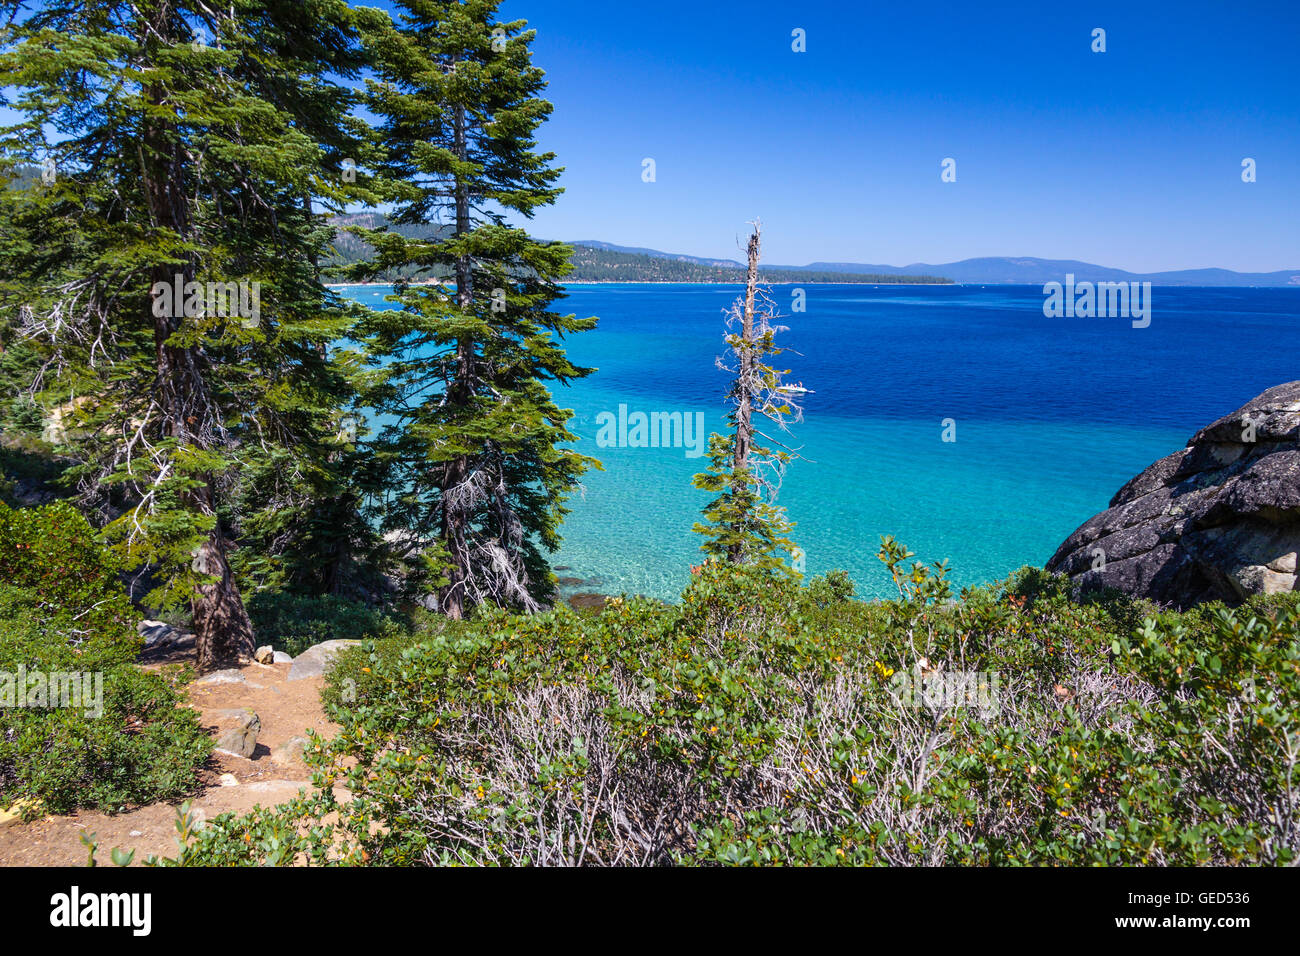 Aqua, turchese e le acque blu del lago di Tahoe dal sentiero Rubicone, CA Foto Stock